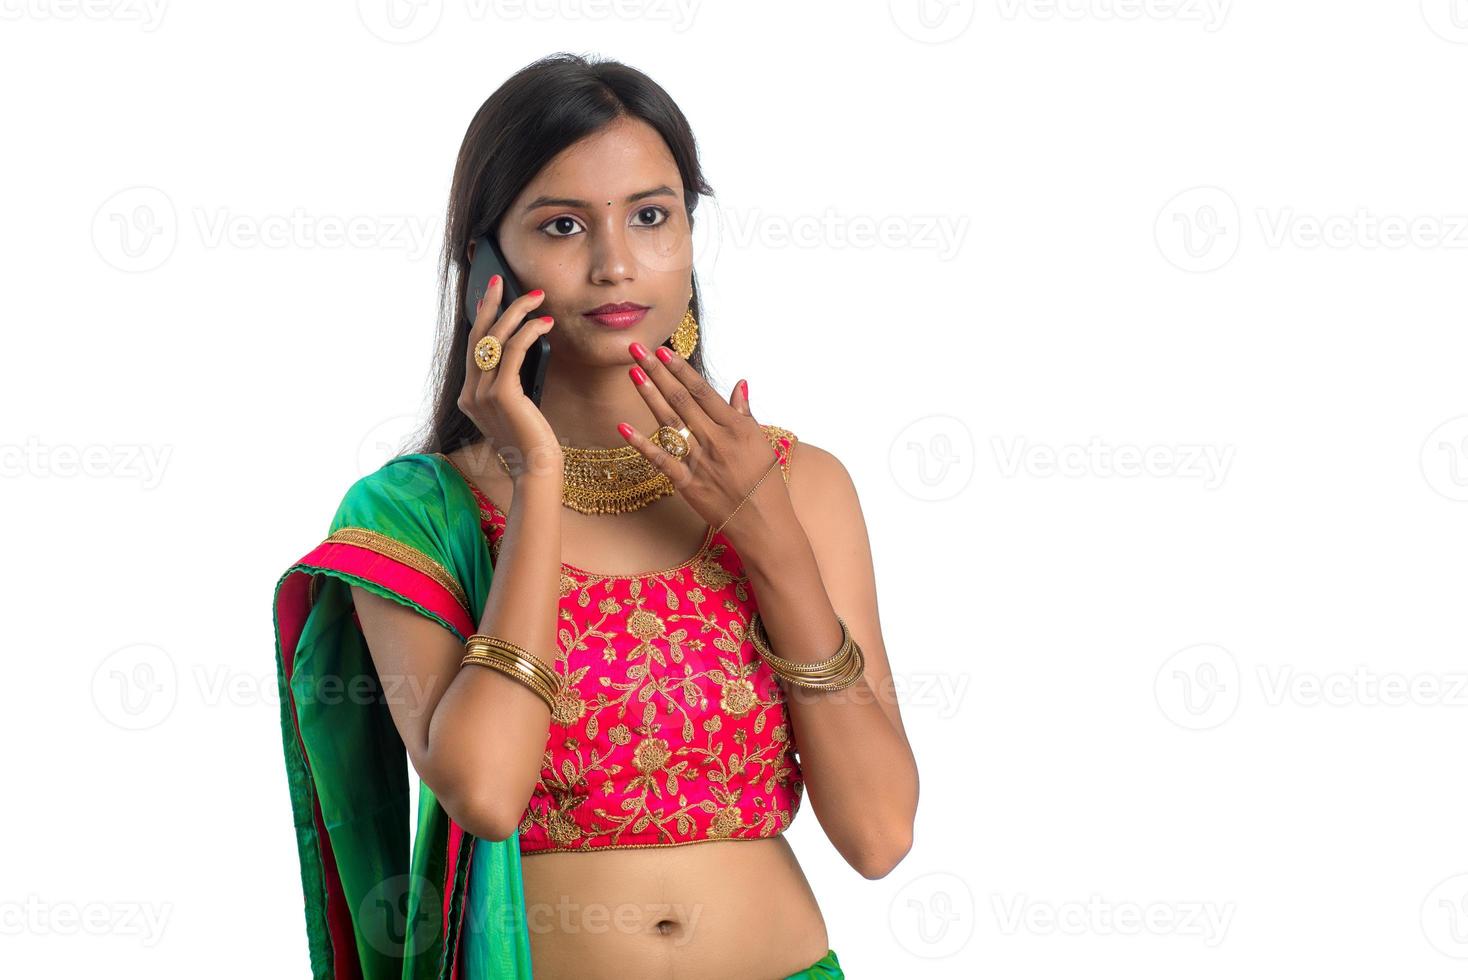 jovem indiana tradicional usando um telefone celular ou smartphone isolado em um fundo branco foto